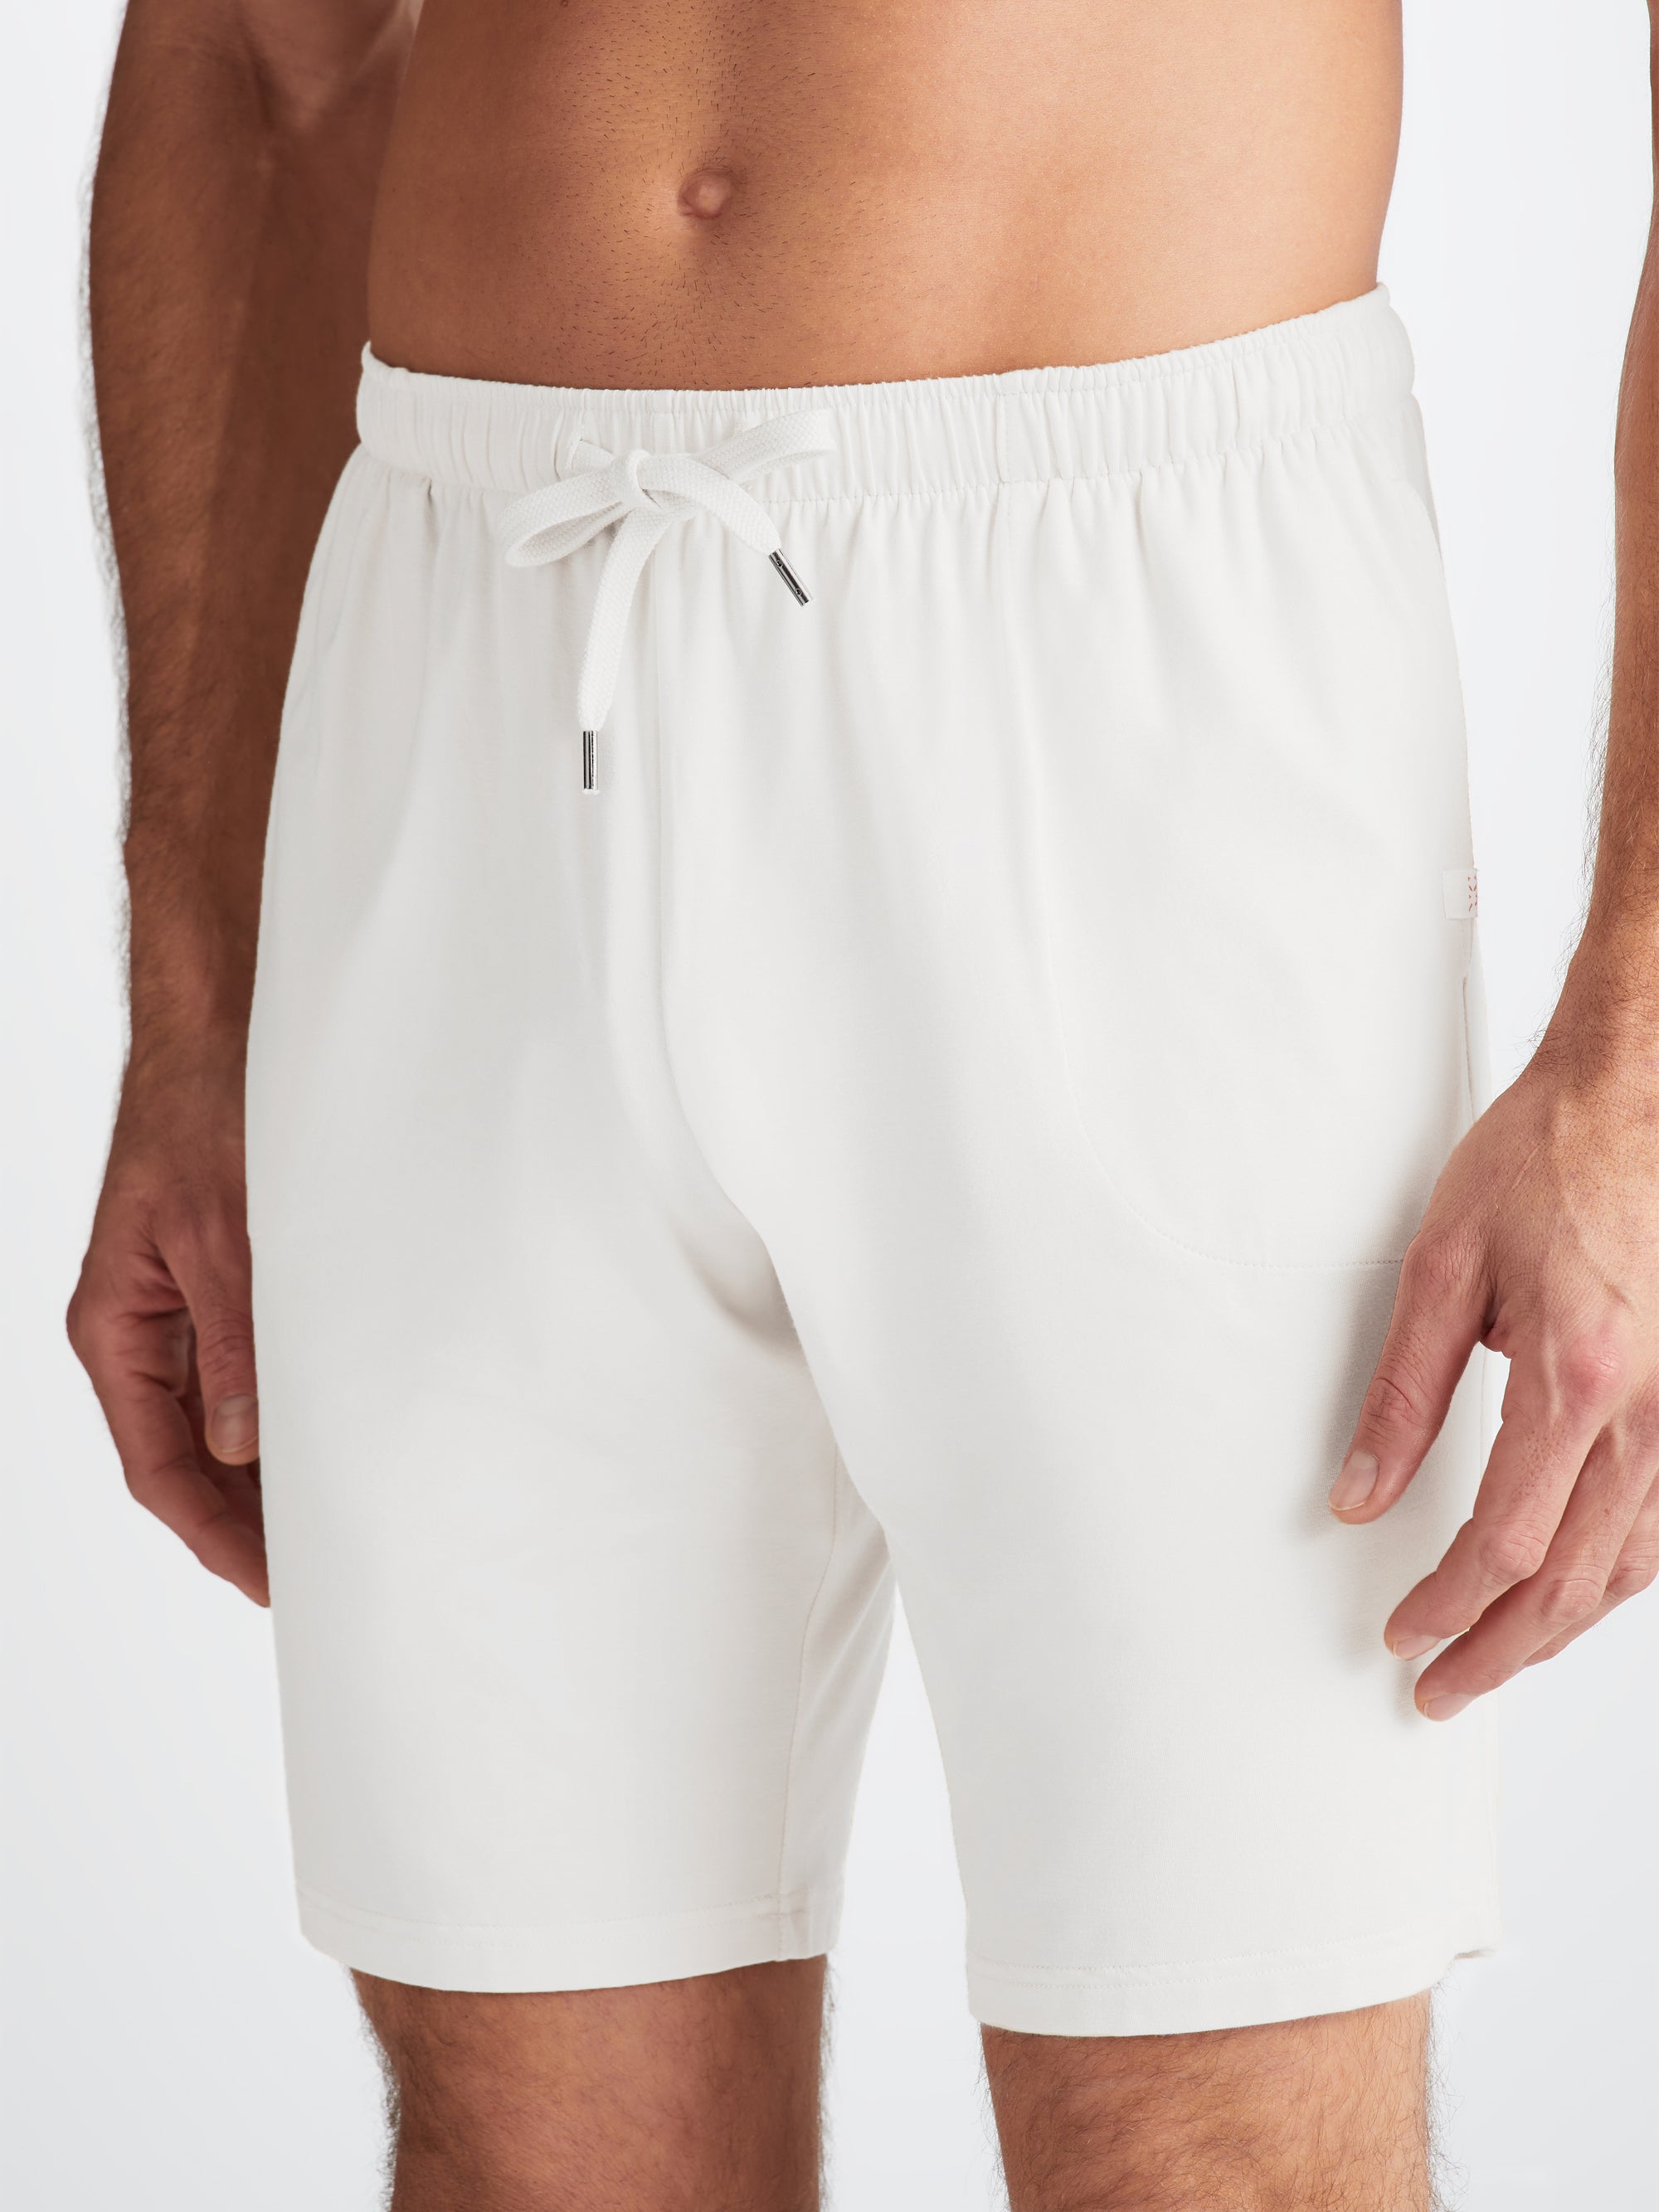 Men's Lounge Shorts Basel Micro Modal Stretch White